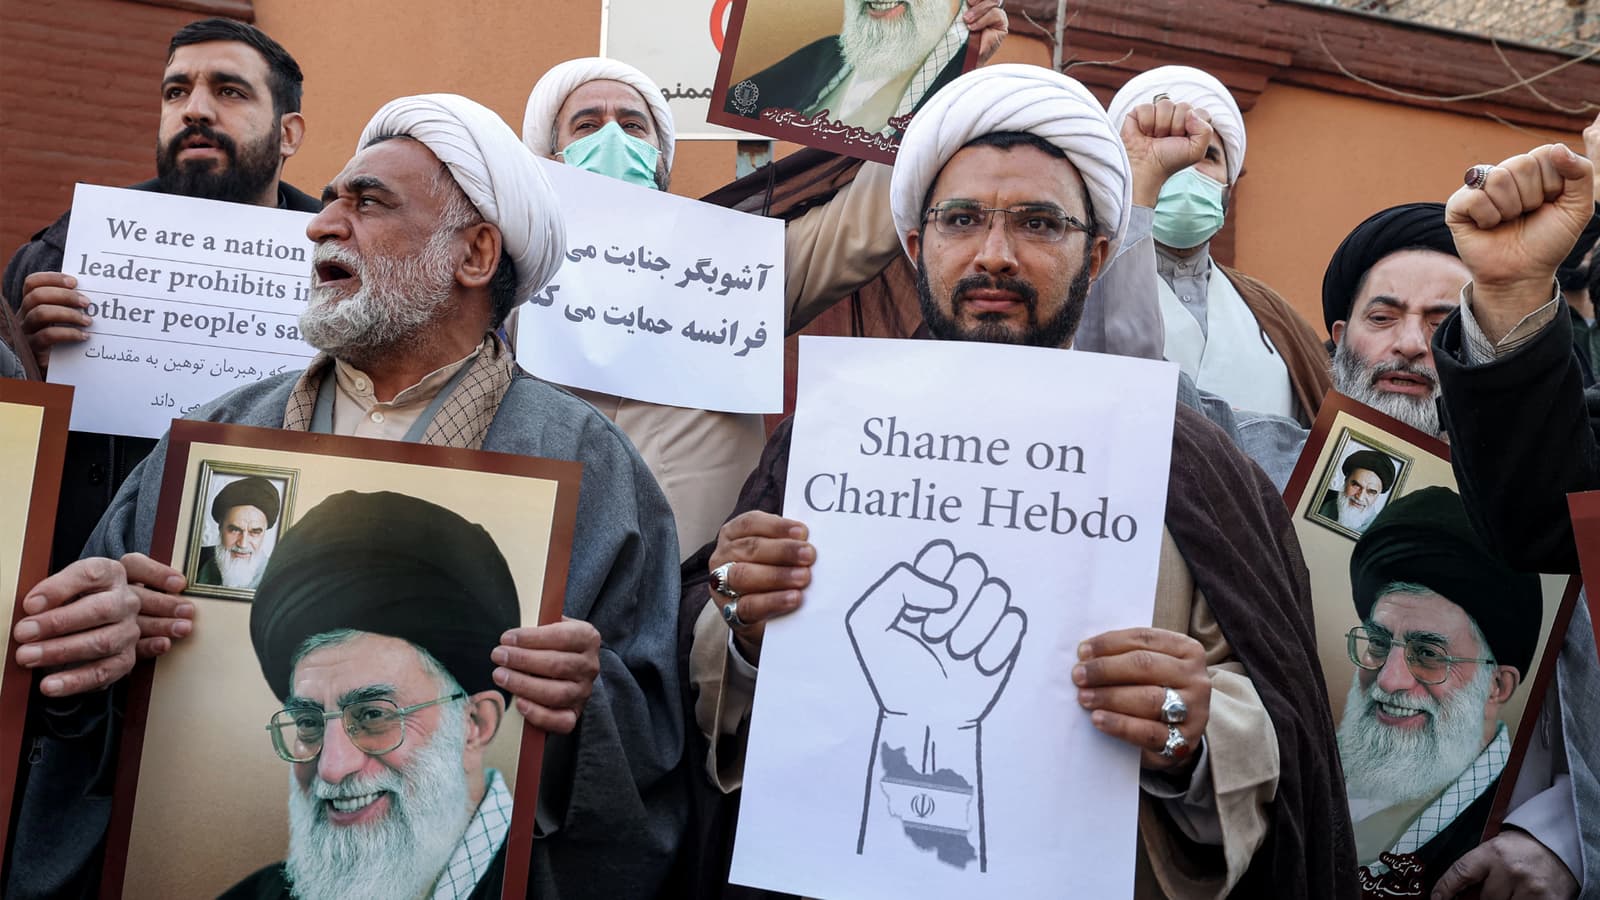 L’Iran à l’origine d’une cyberattaque contre Charlie Hebdo, affirme Microsoft